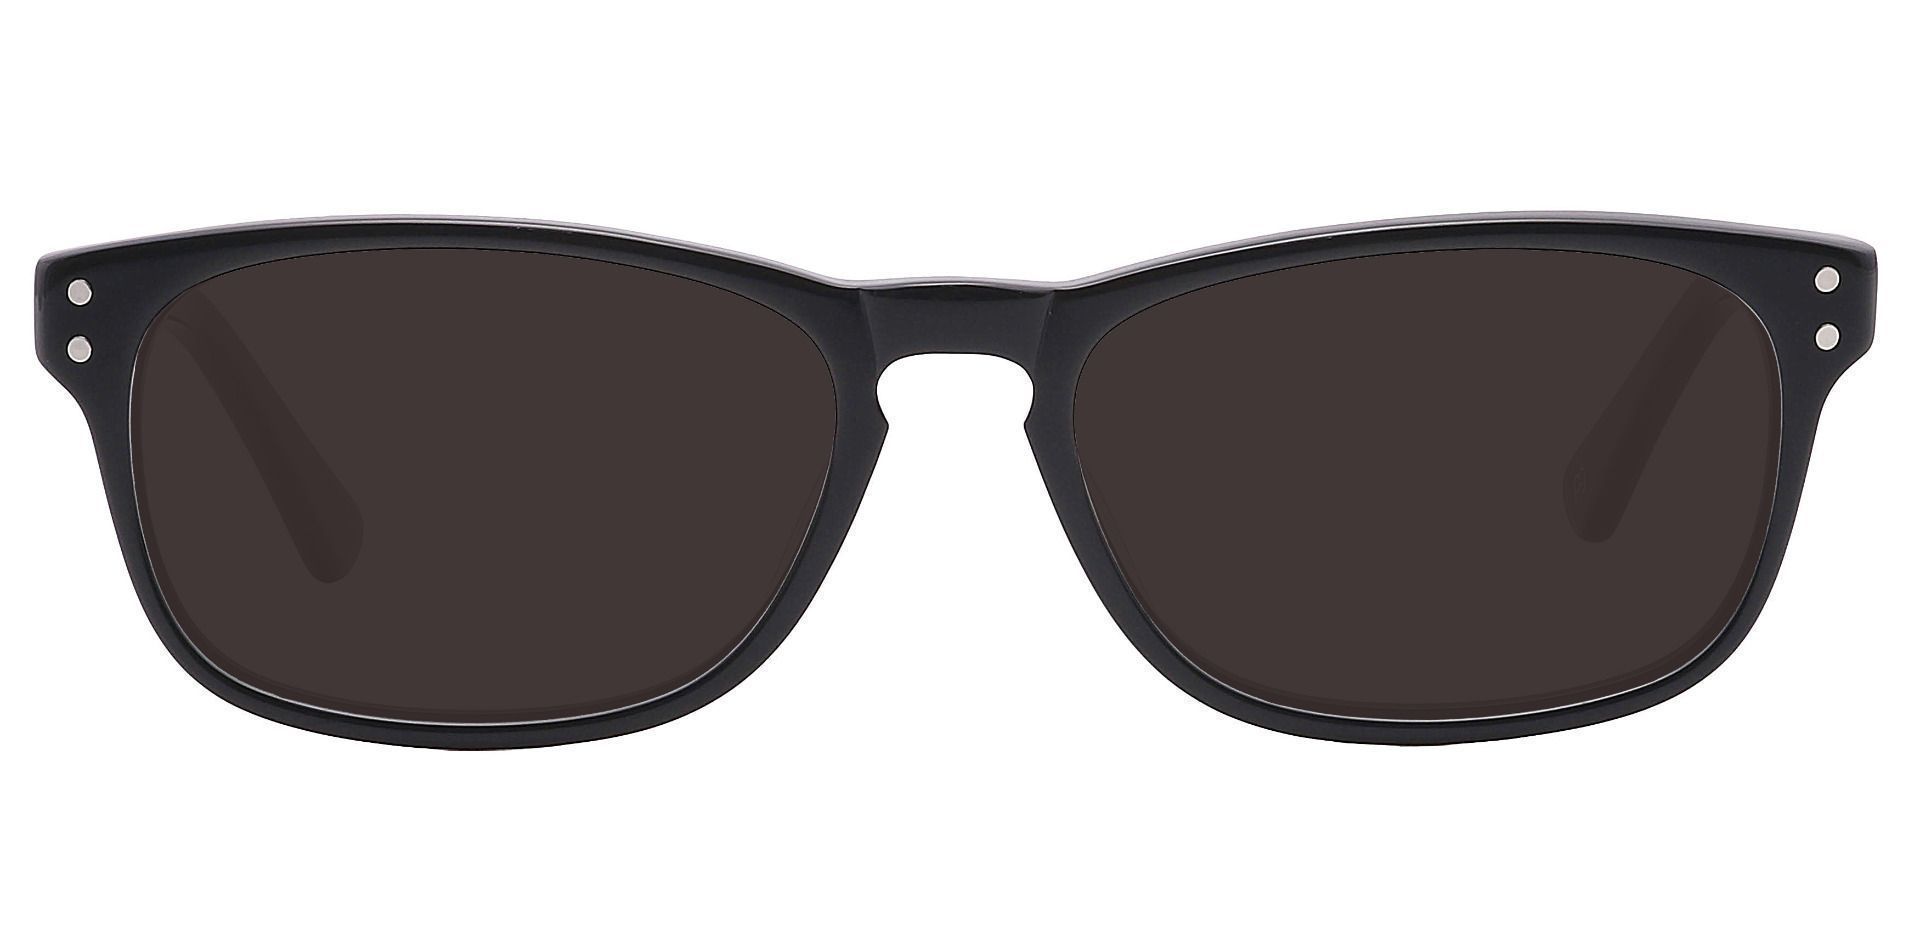 Morris Rectangle Reading Sunglasses - Black Frame With Gray Lenses